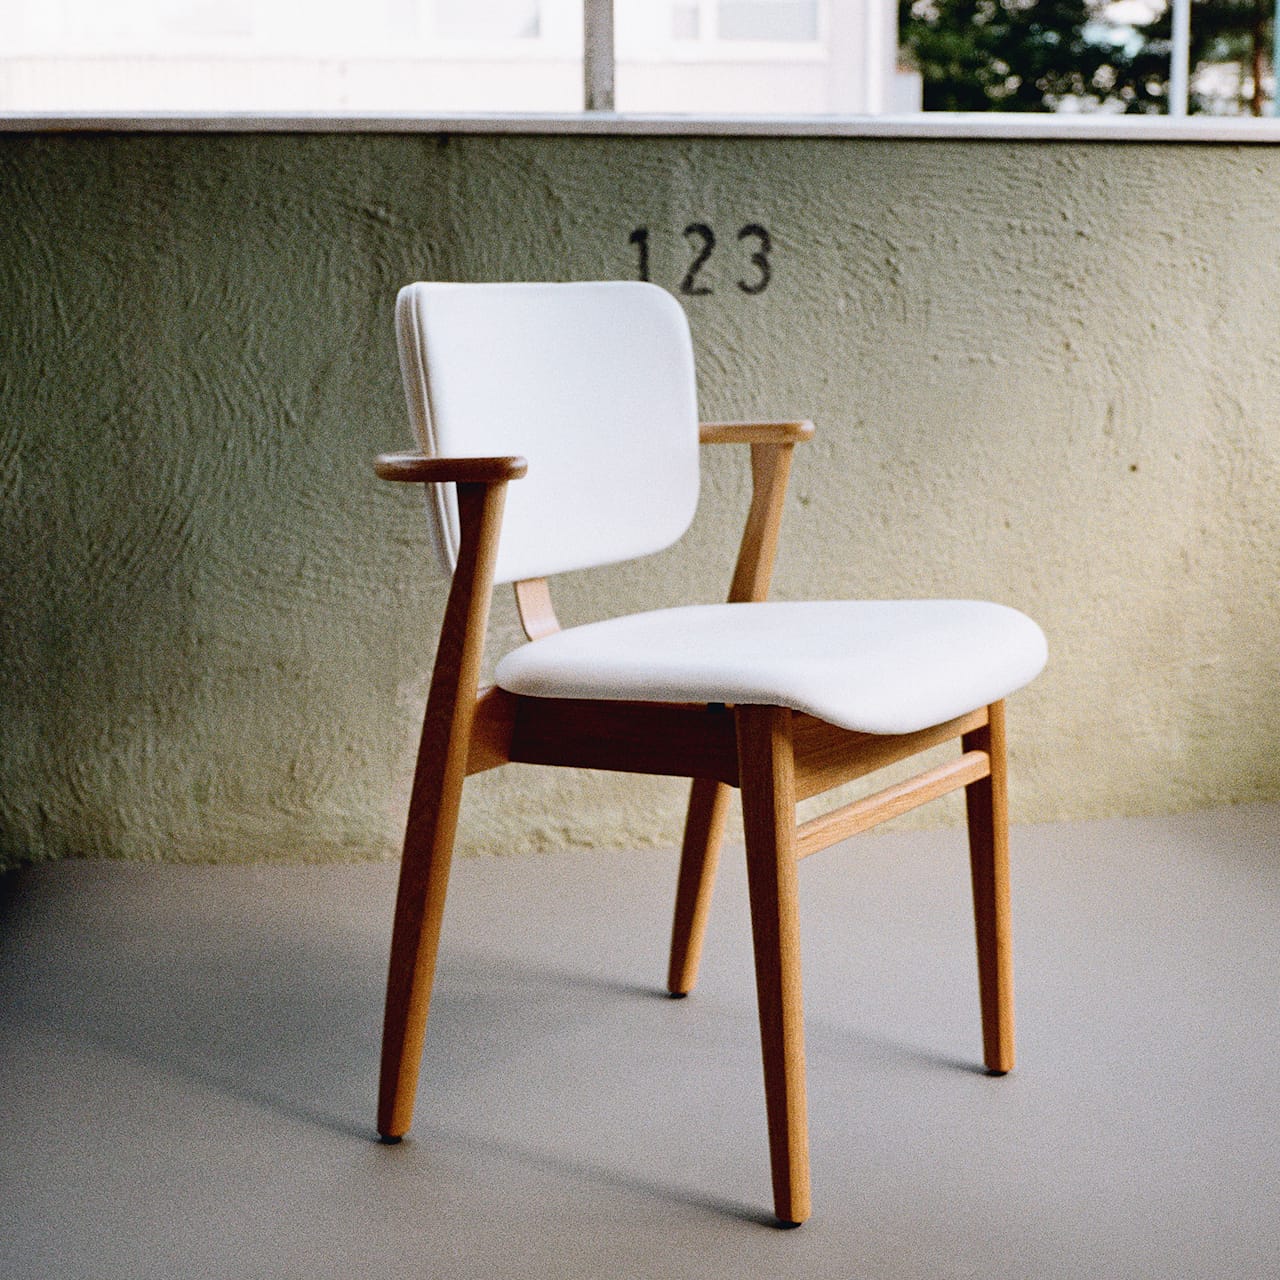 Domus Chair Upholstred